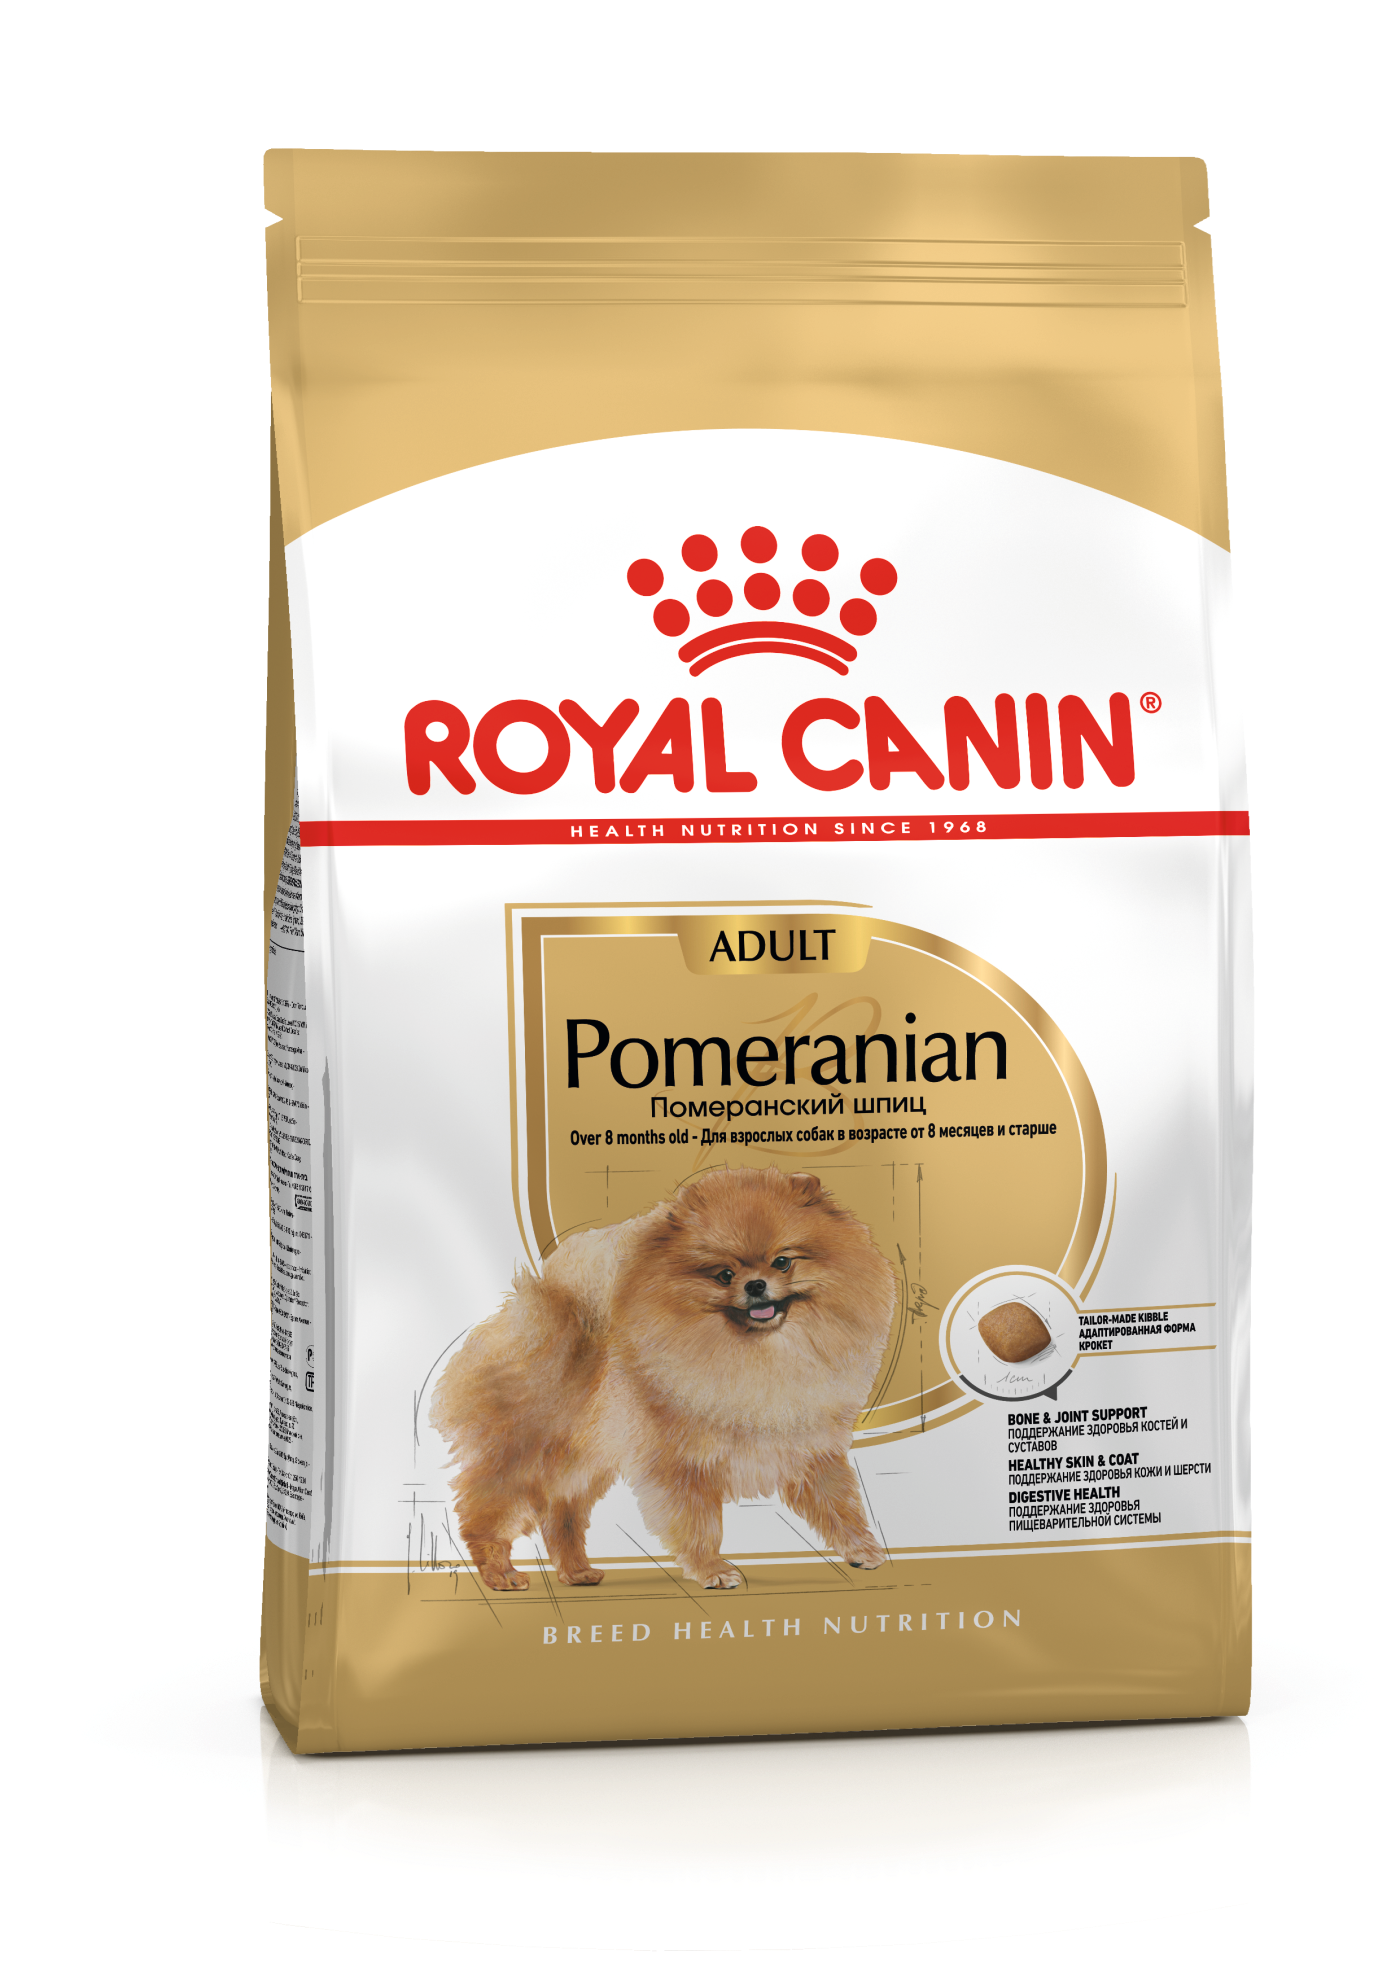 Купить сухой корм Royal Canin Pomeranian Adult (Померанский шпиц эдалт) в  официальном интернет-магазине